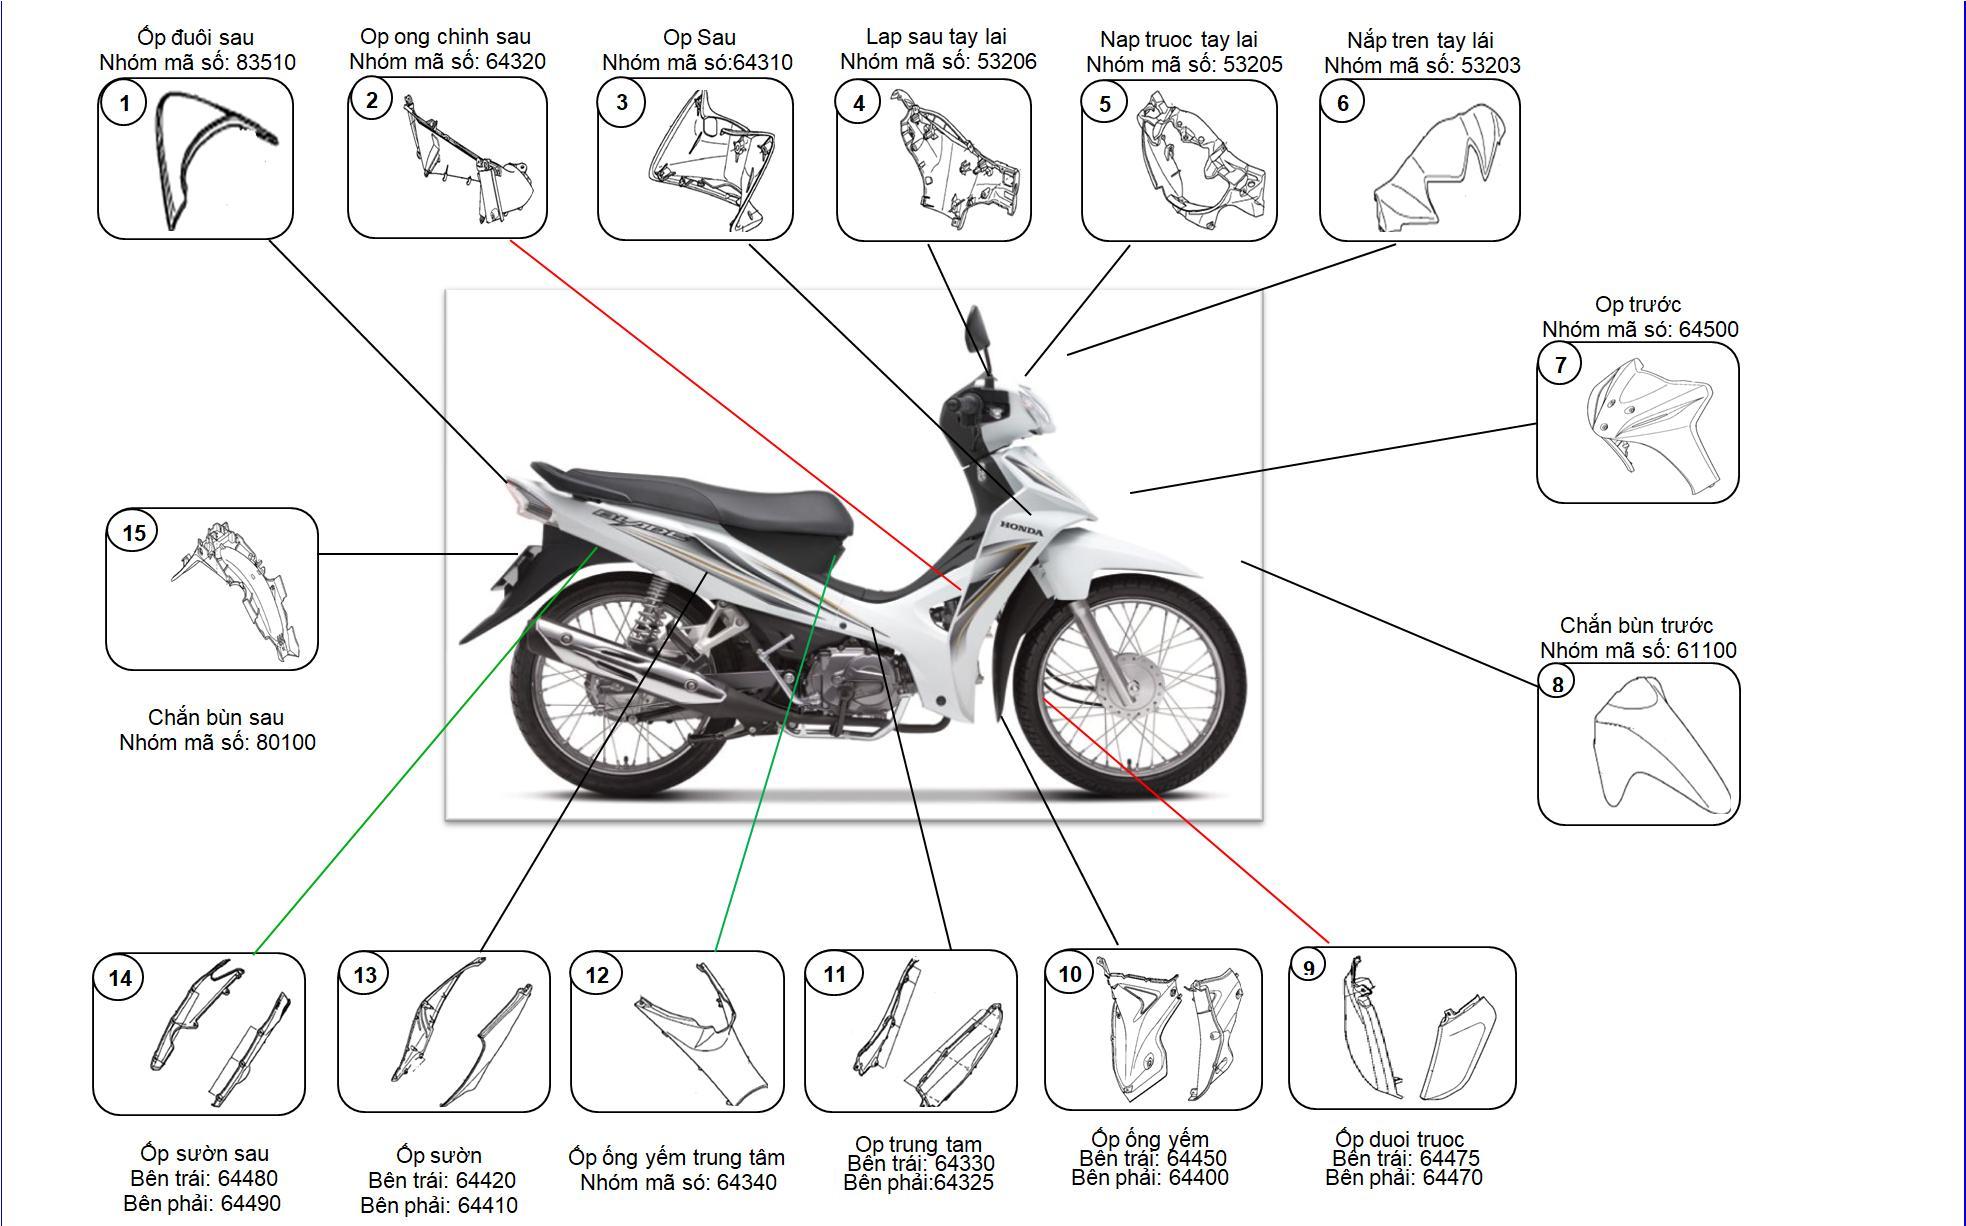 Cấu tạo của xe máy và một số bộ phận cần bảo dưỡng cho xe máy